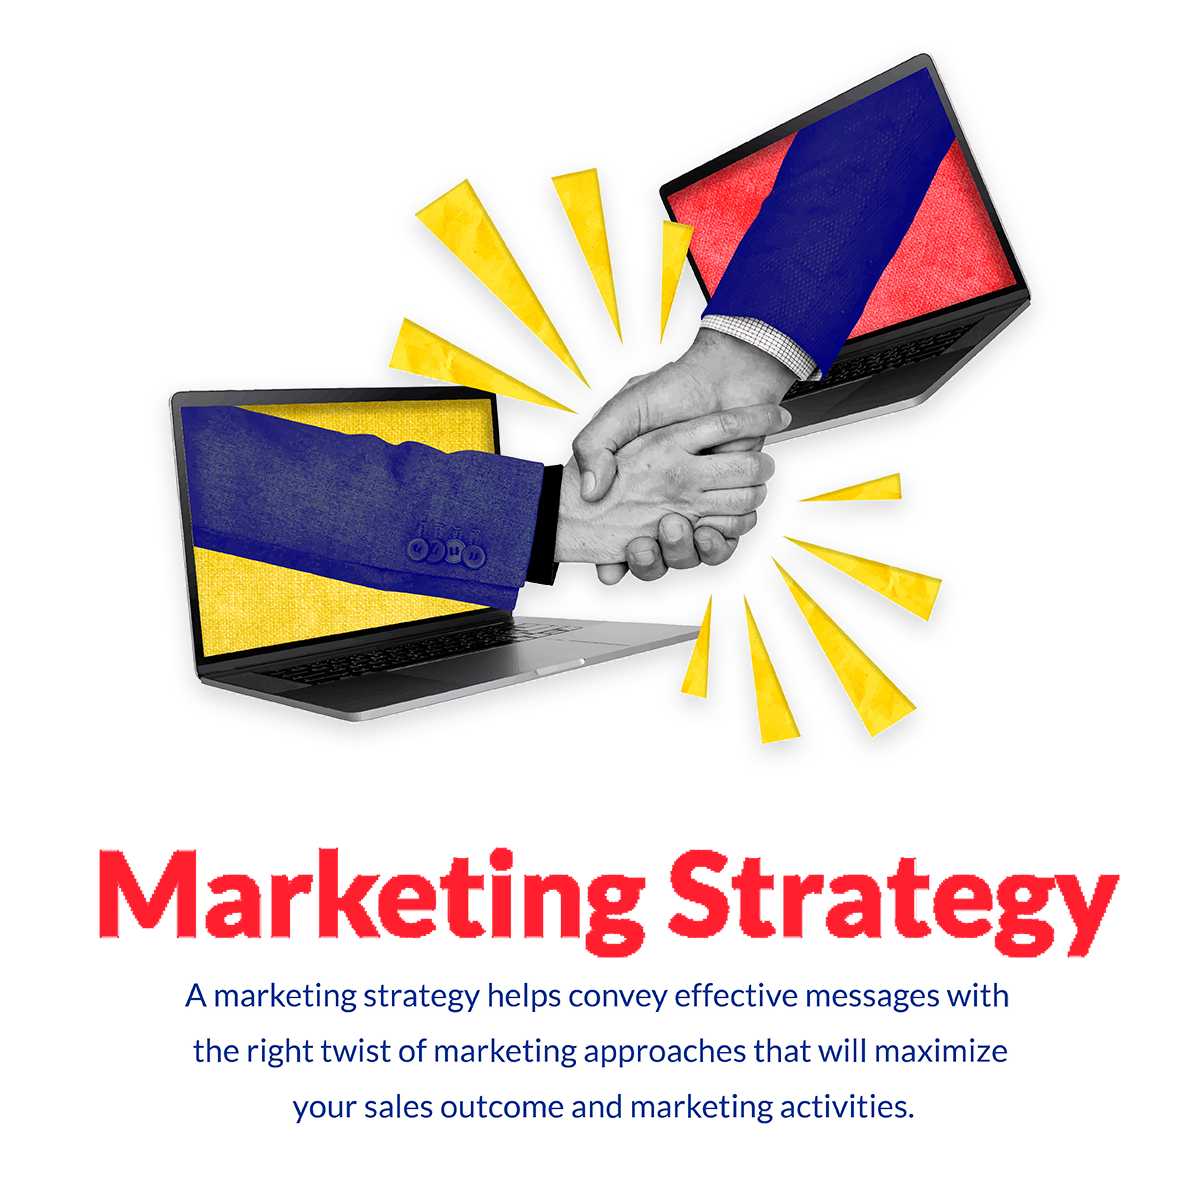 Digital Marketing – Social-Media, SEO, Content Marketing